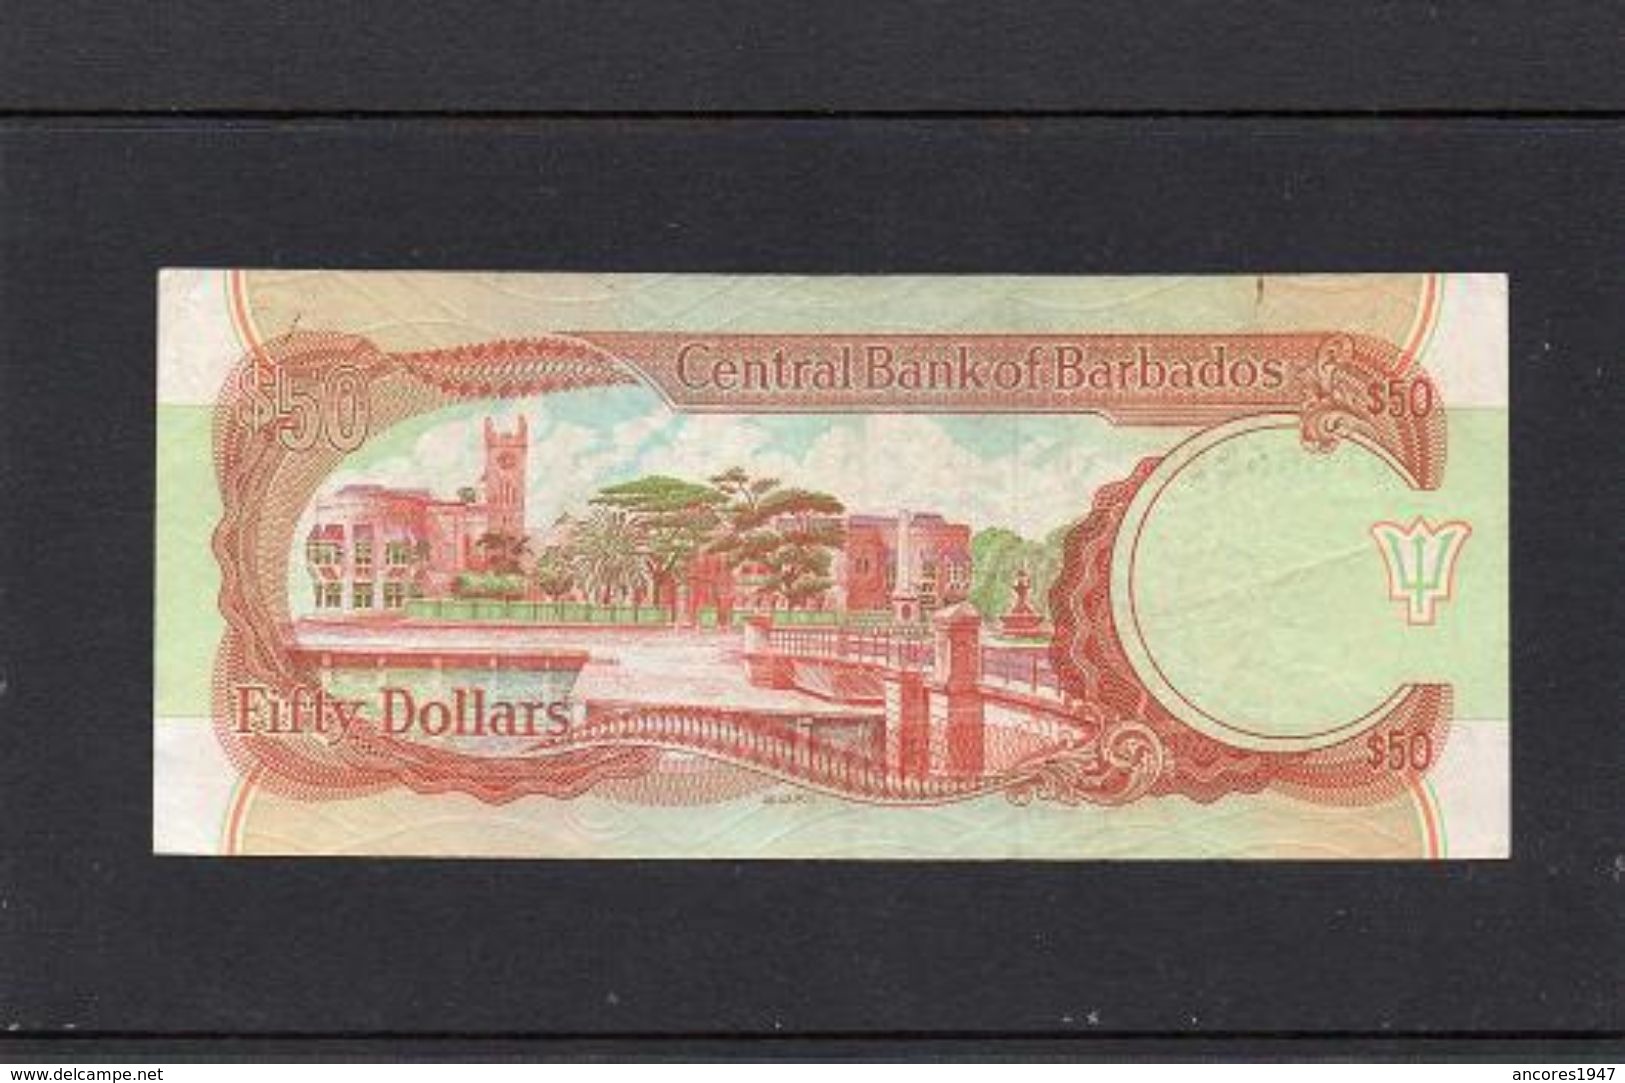 BARBADOS 1989, 50 DOLLARS, P-40a, CIRCULADO, 2 ESCANER - Barbades